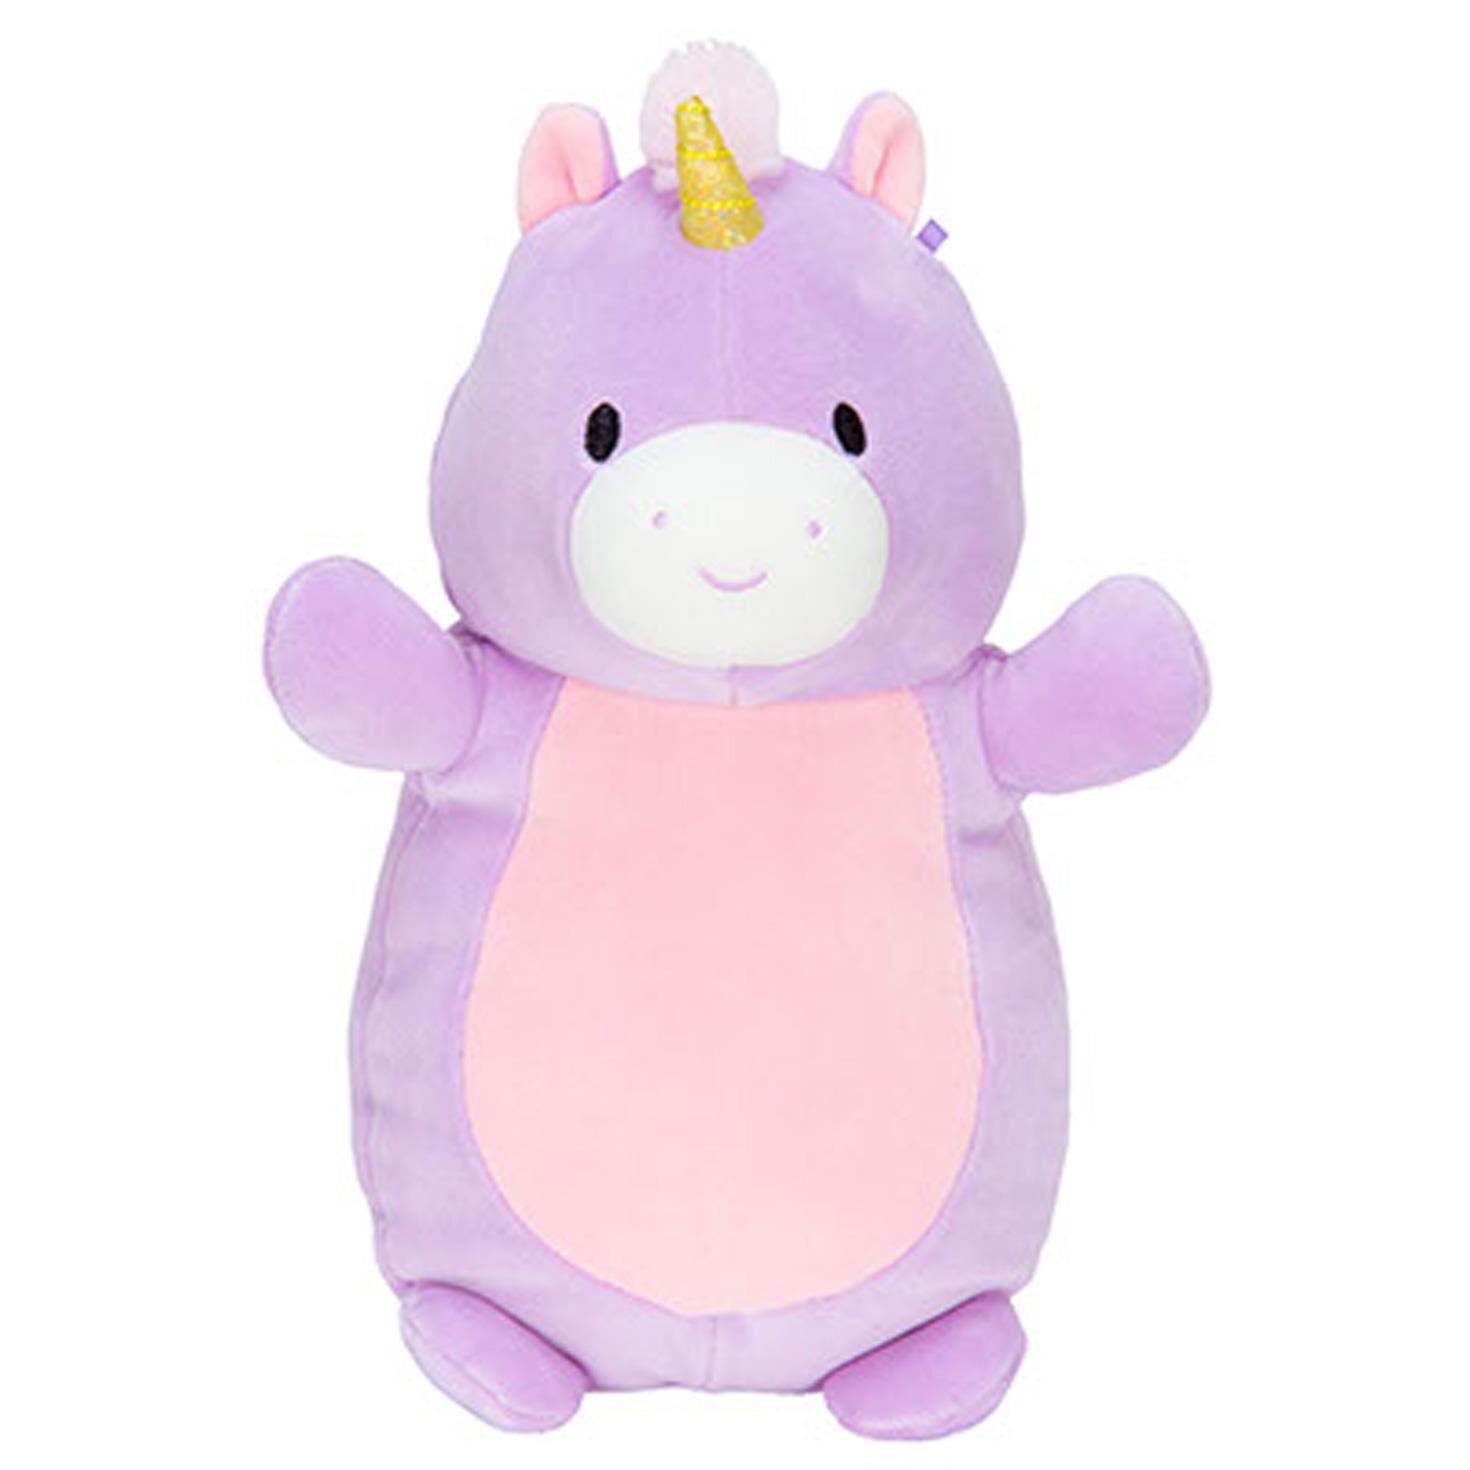 squishmallow purple unicorn